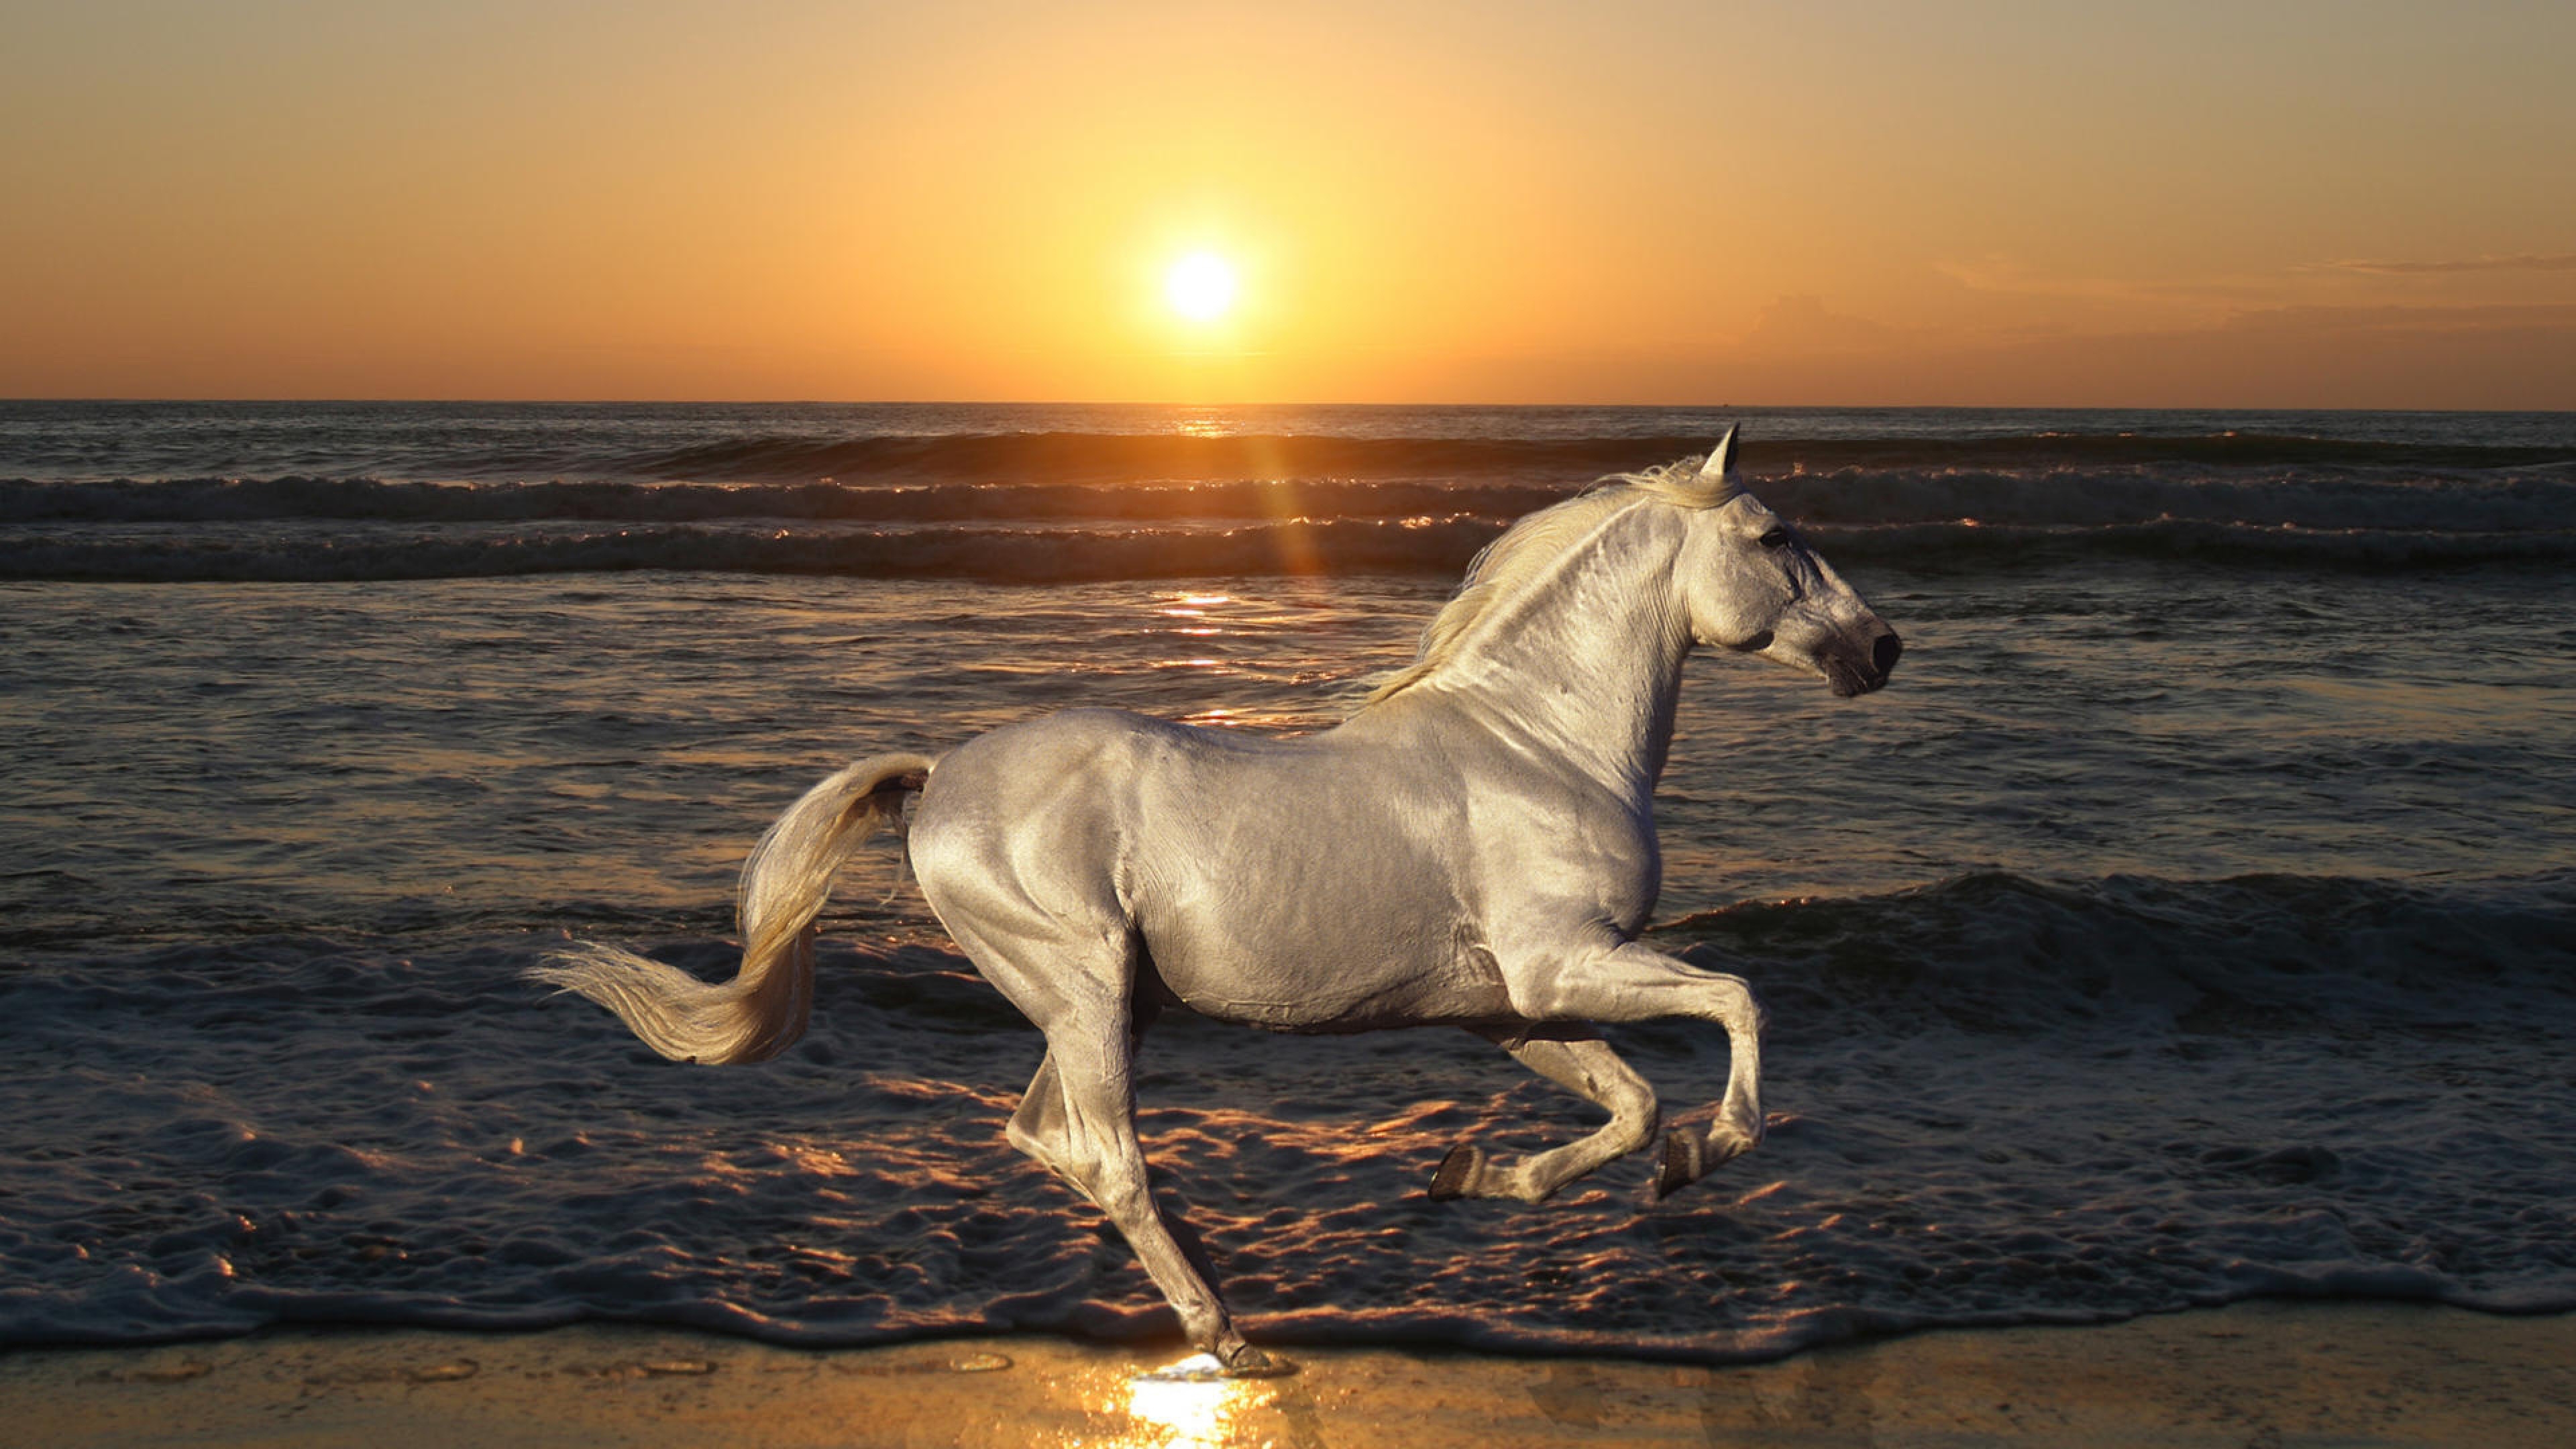 Картинки лошадей на заставку. Жемчужный ахалтекинец. Лошадь бежит. Красивые лошади. Белая лошадь.